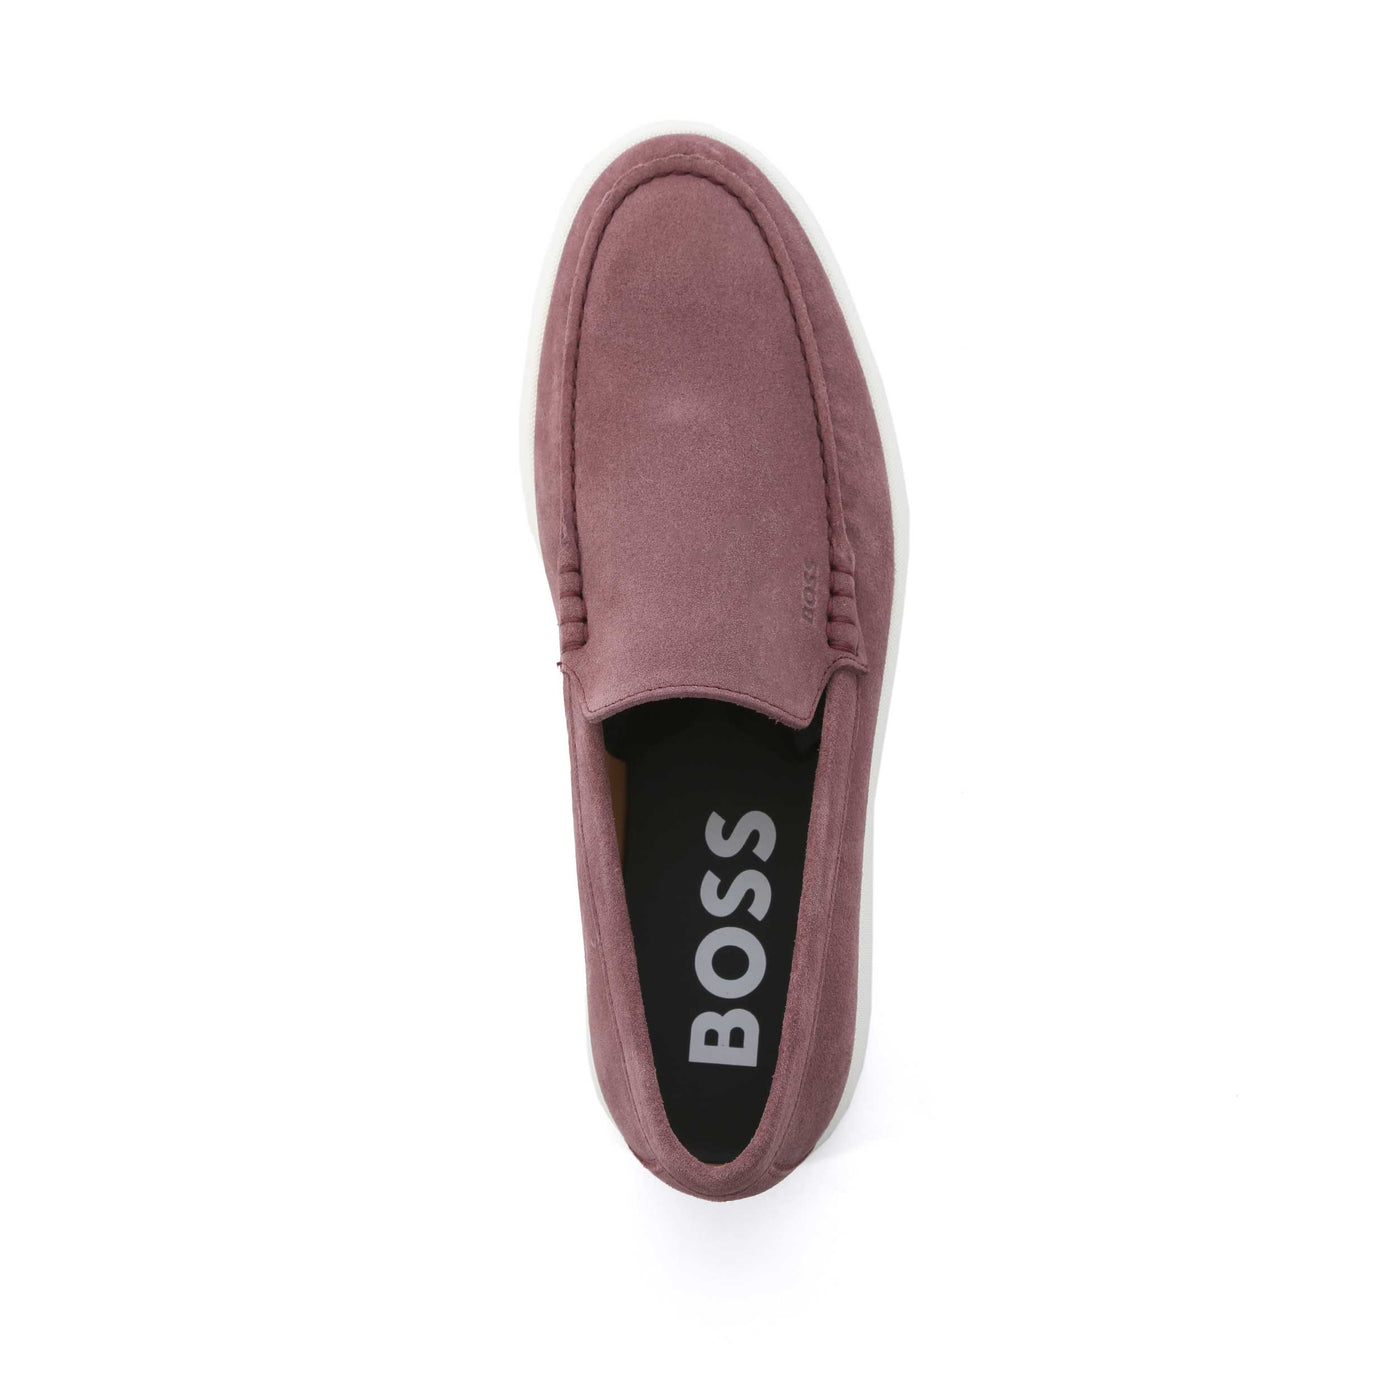 BOSS Sienne Loaf sdvp Shoe in Open Pink Birdseye